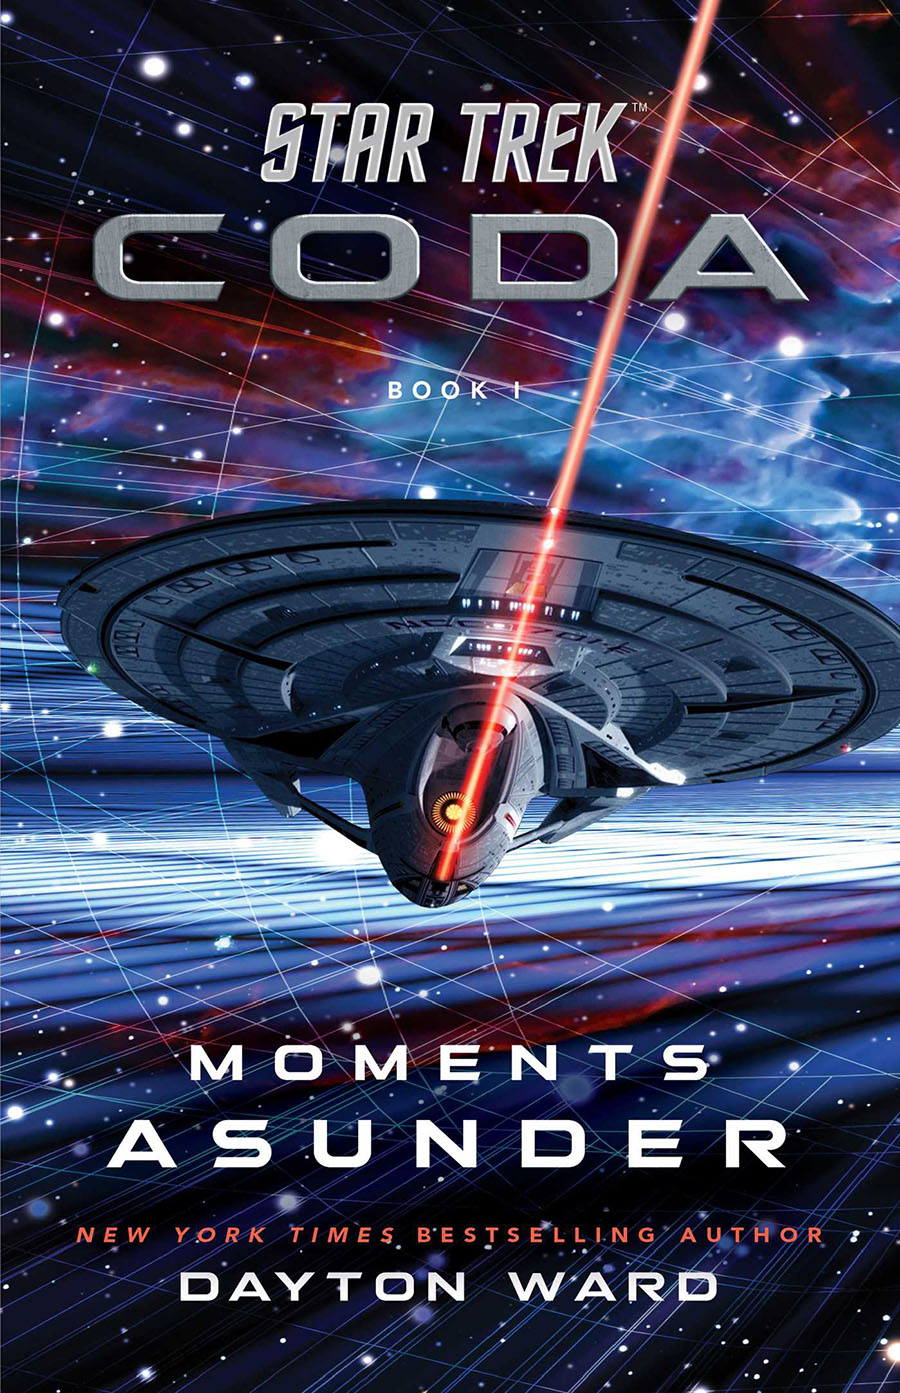 Star Trek Coda Novel Book 1 Moments Asunder TP